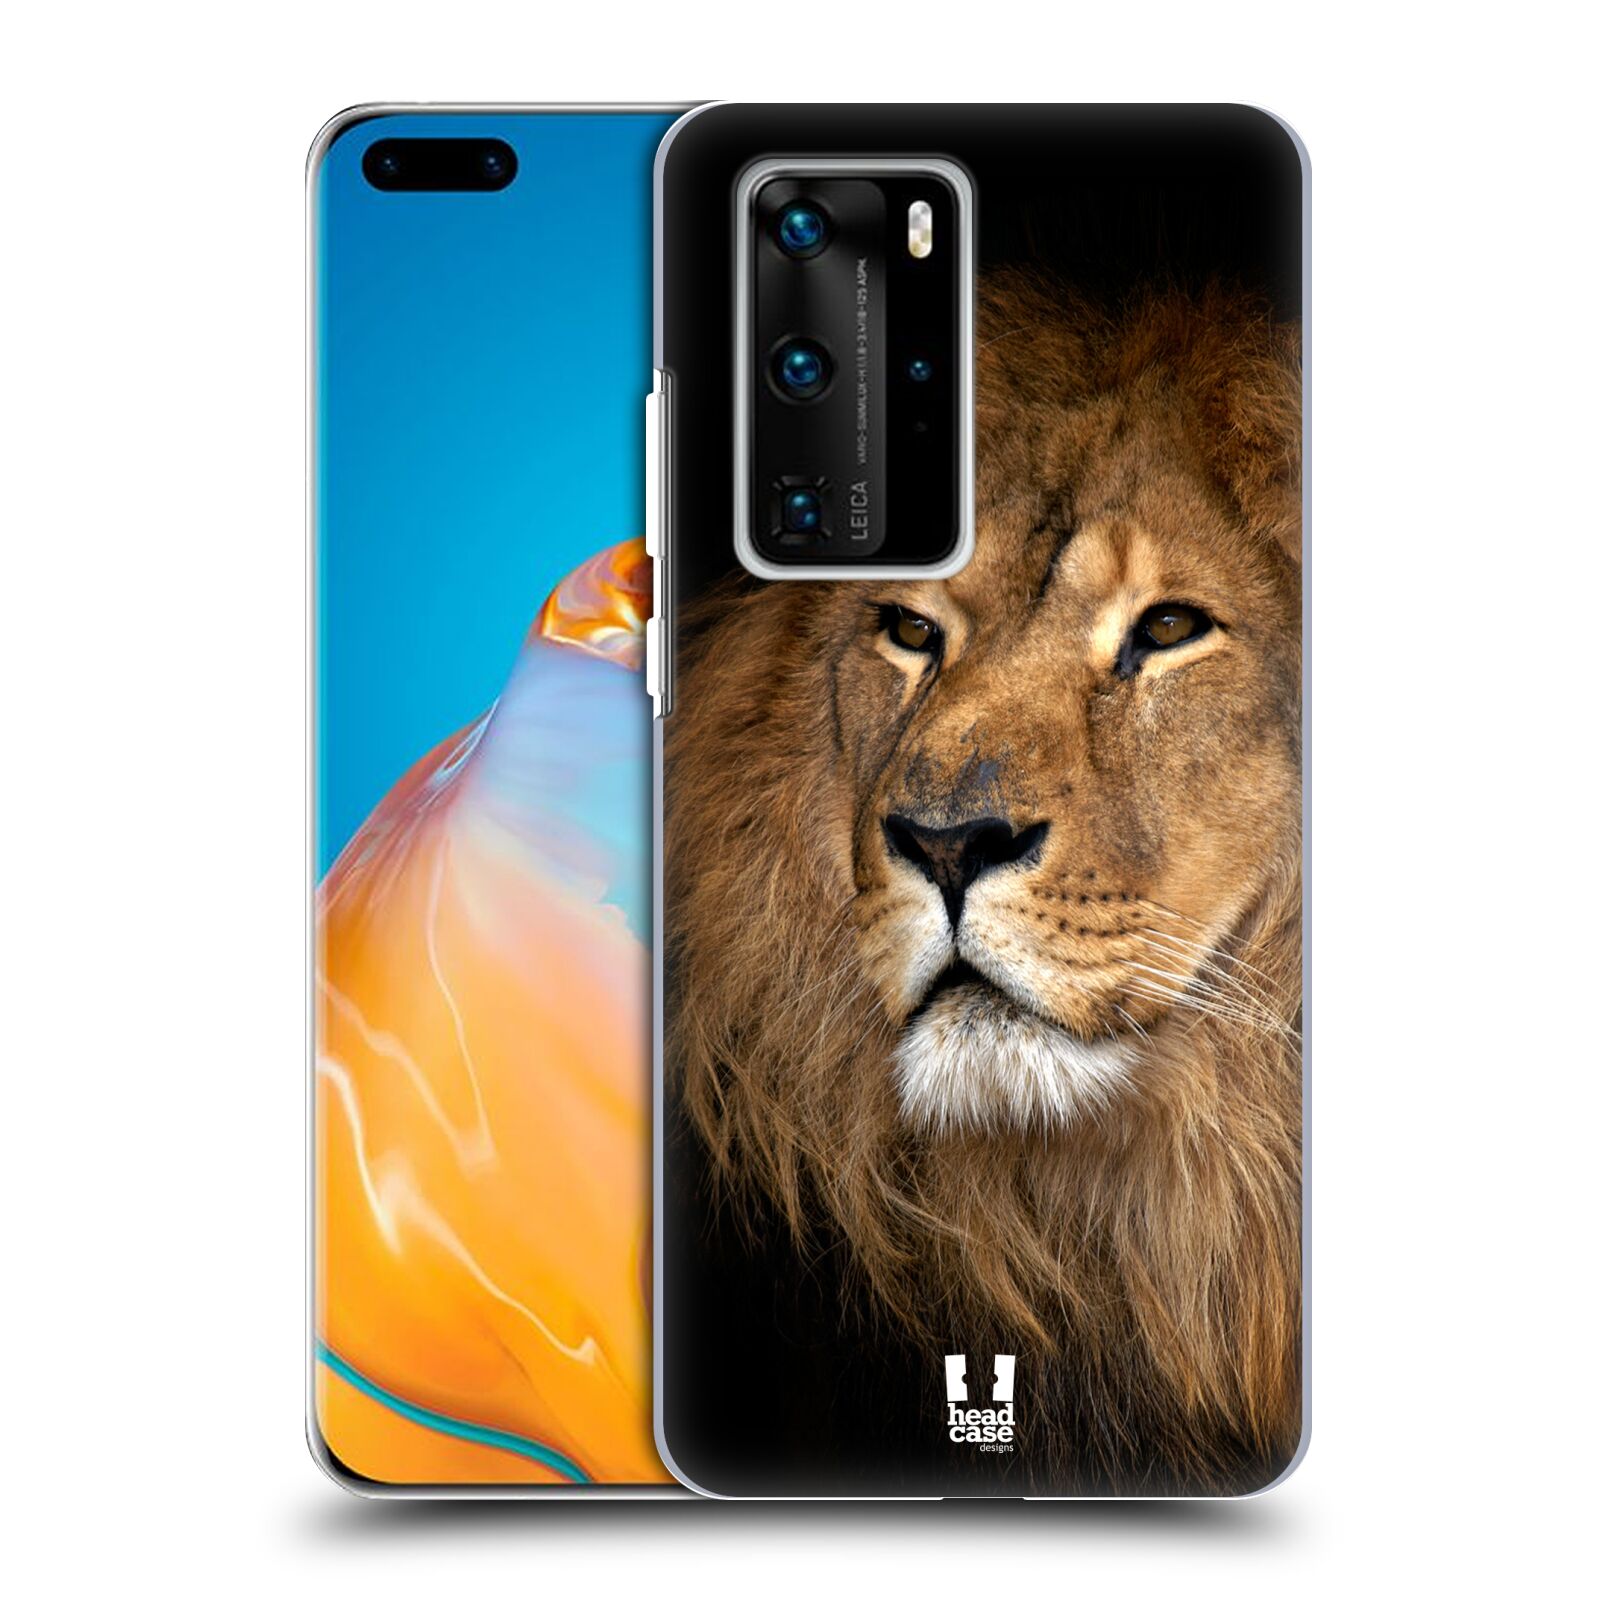 Zadní obal pro mobil Huawei P40 PRO / P40 PRO PLUS - HEAD CASE - Svět zvířat král zvířat Lev